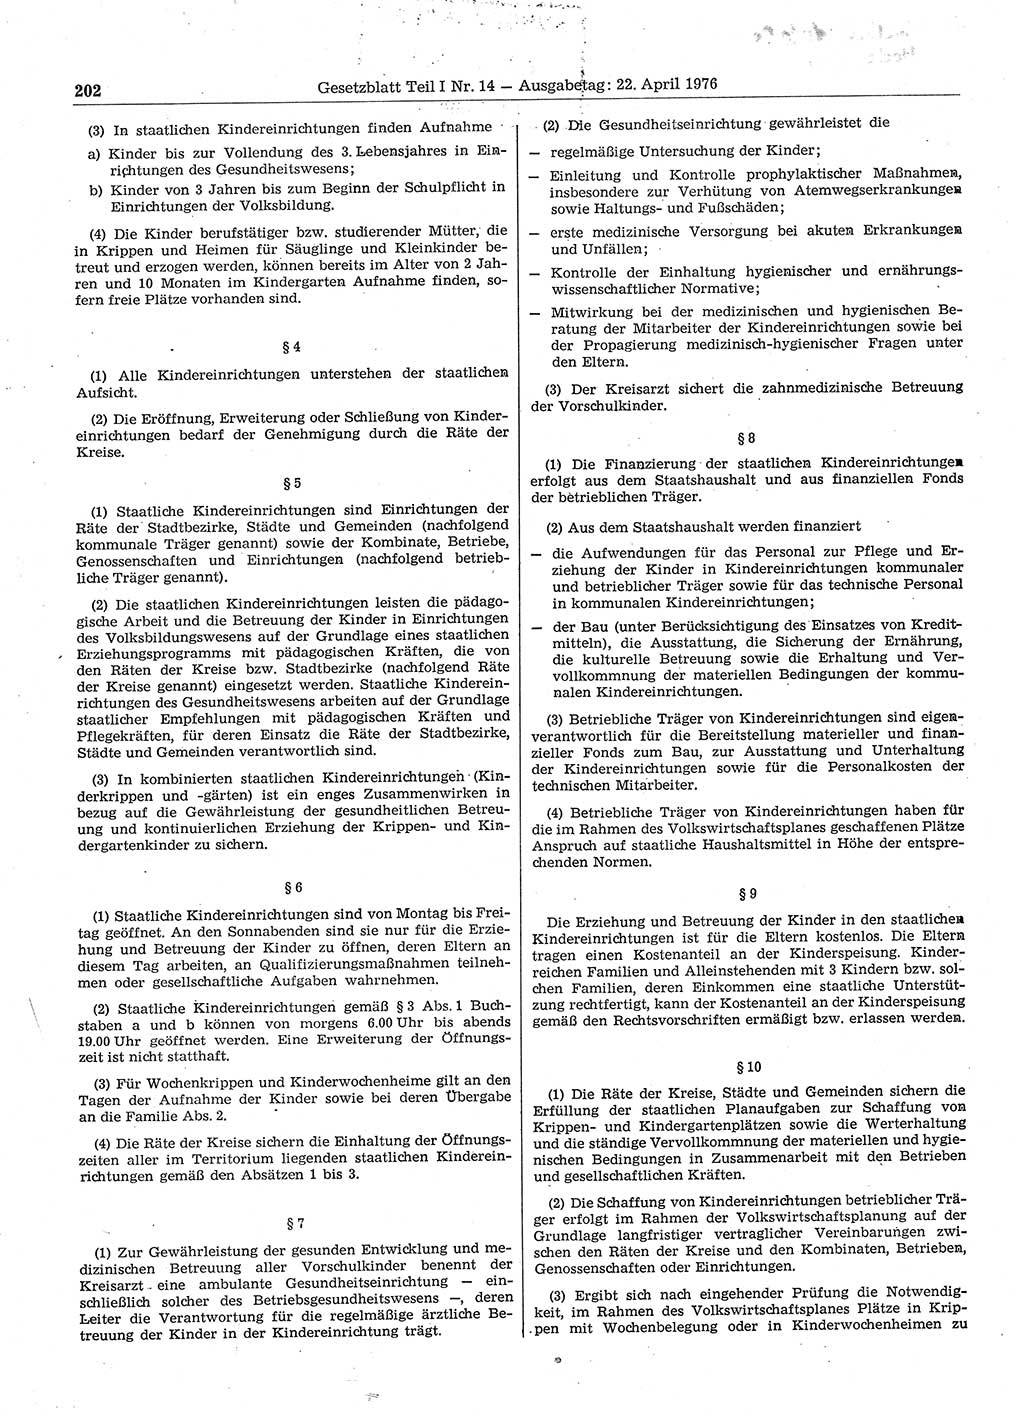 Gesetzblatt (GBl.) der Deutschen Demokratischen Republik (DDR) Teil Ⅰ 1976, Seite 202 (GBl. DDR Ⅰ 1976, S. 202)